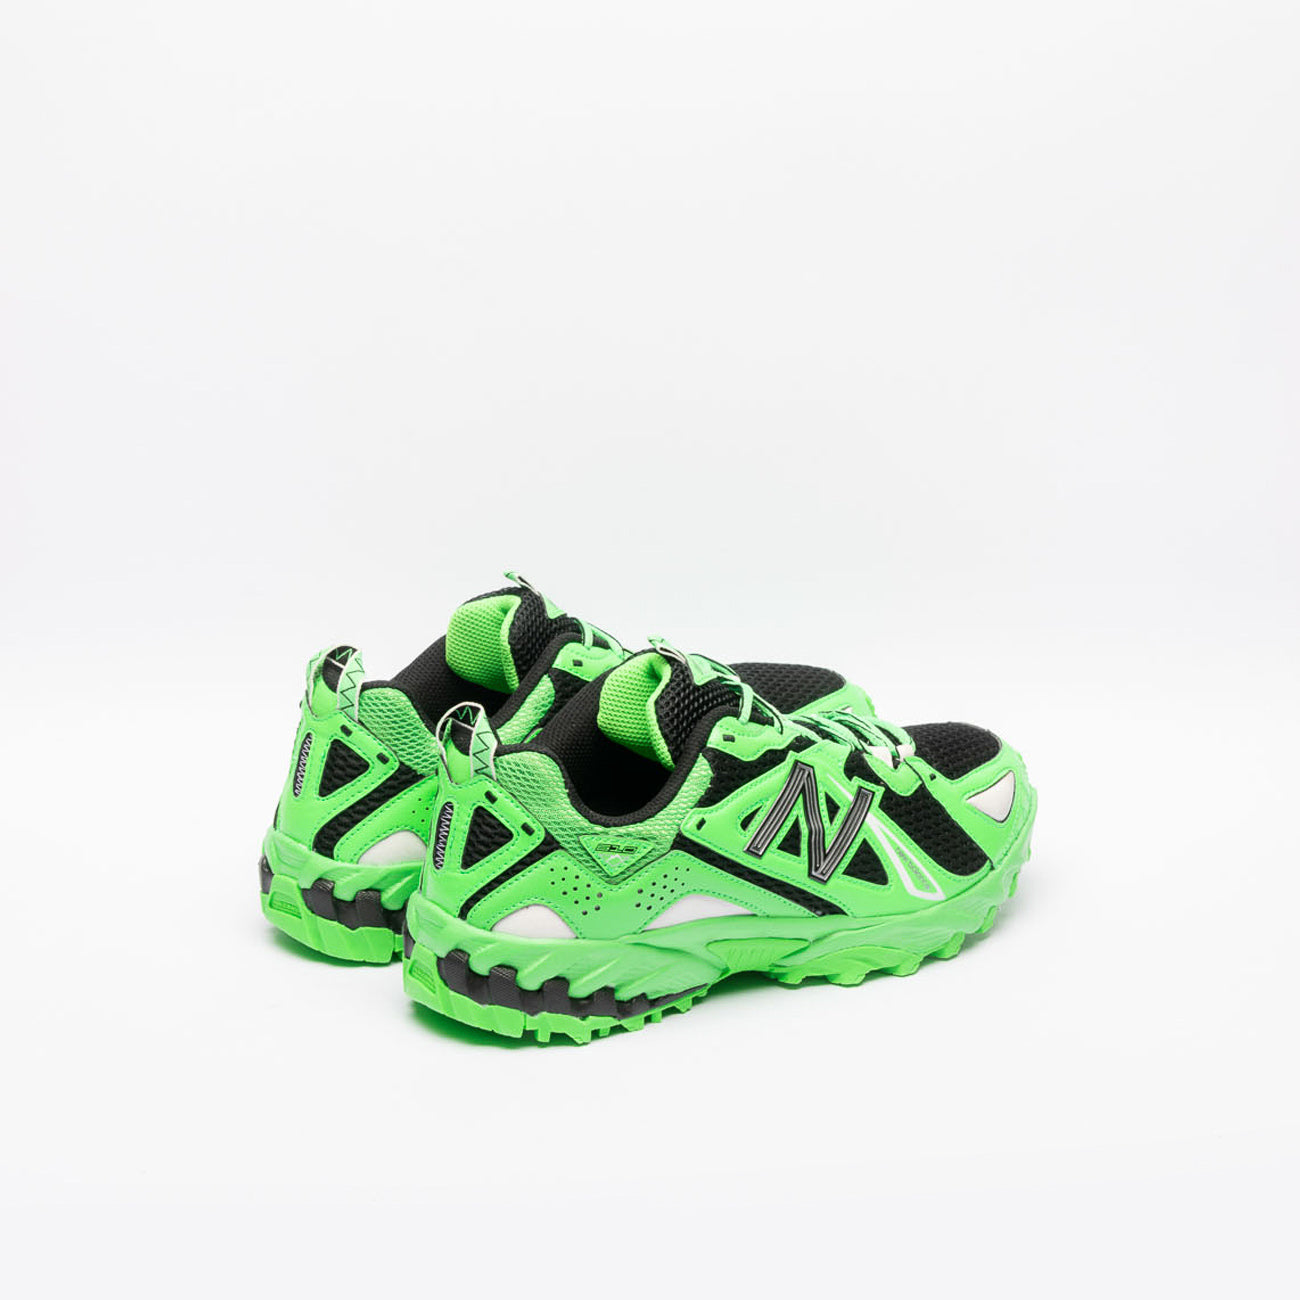 Sneaker fashion running New Balance 610v1 in pelle verde